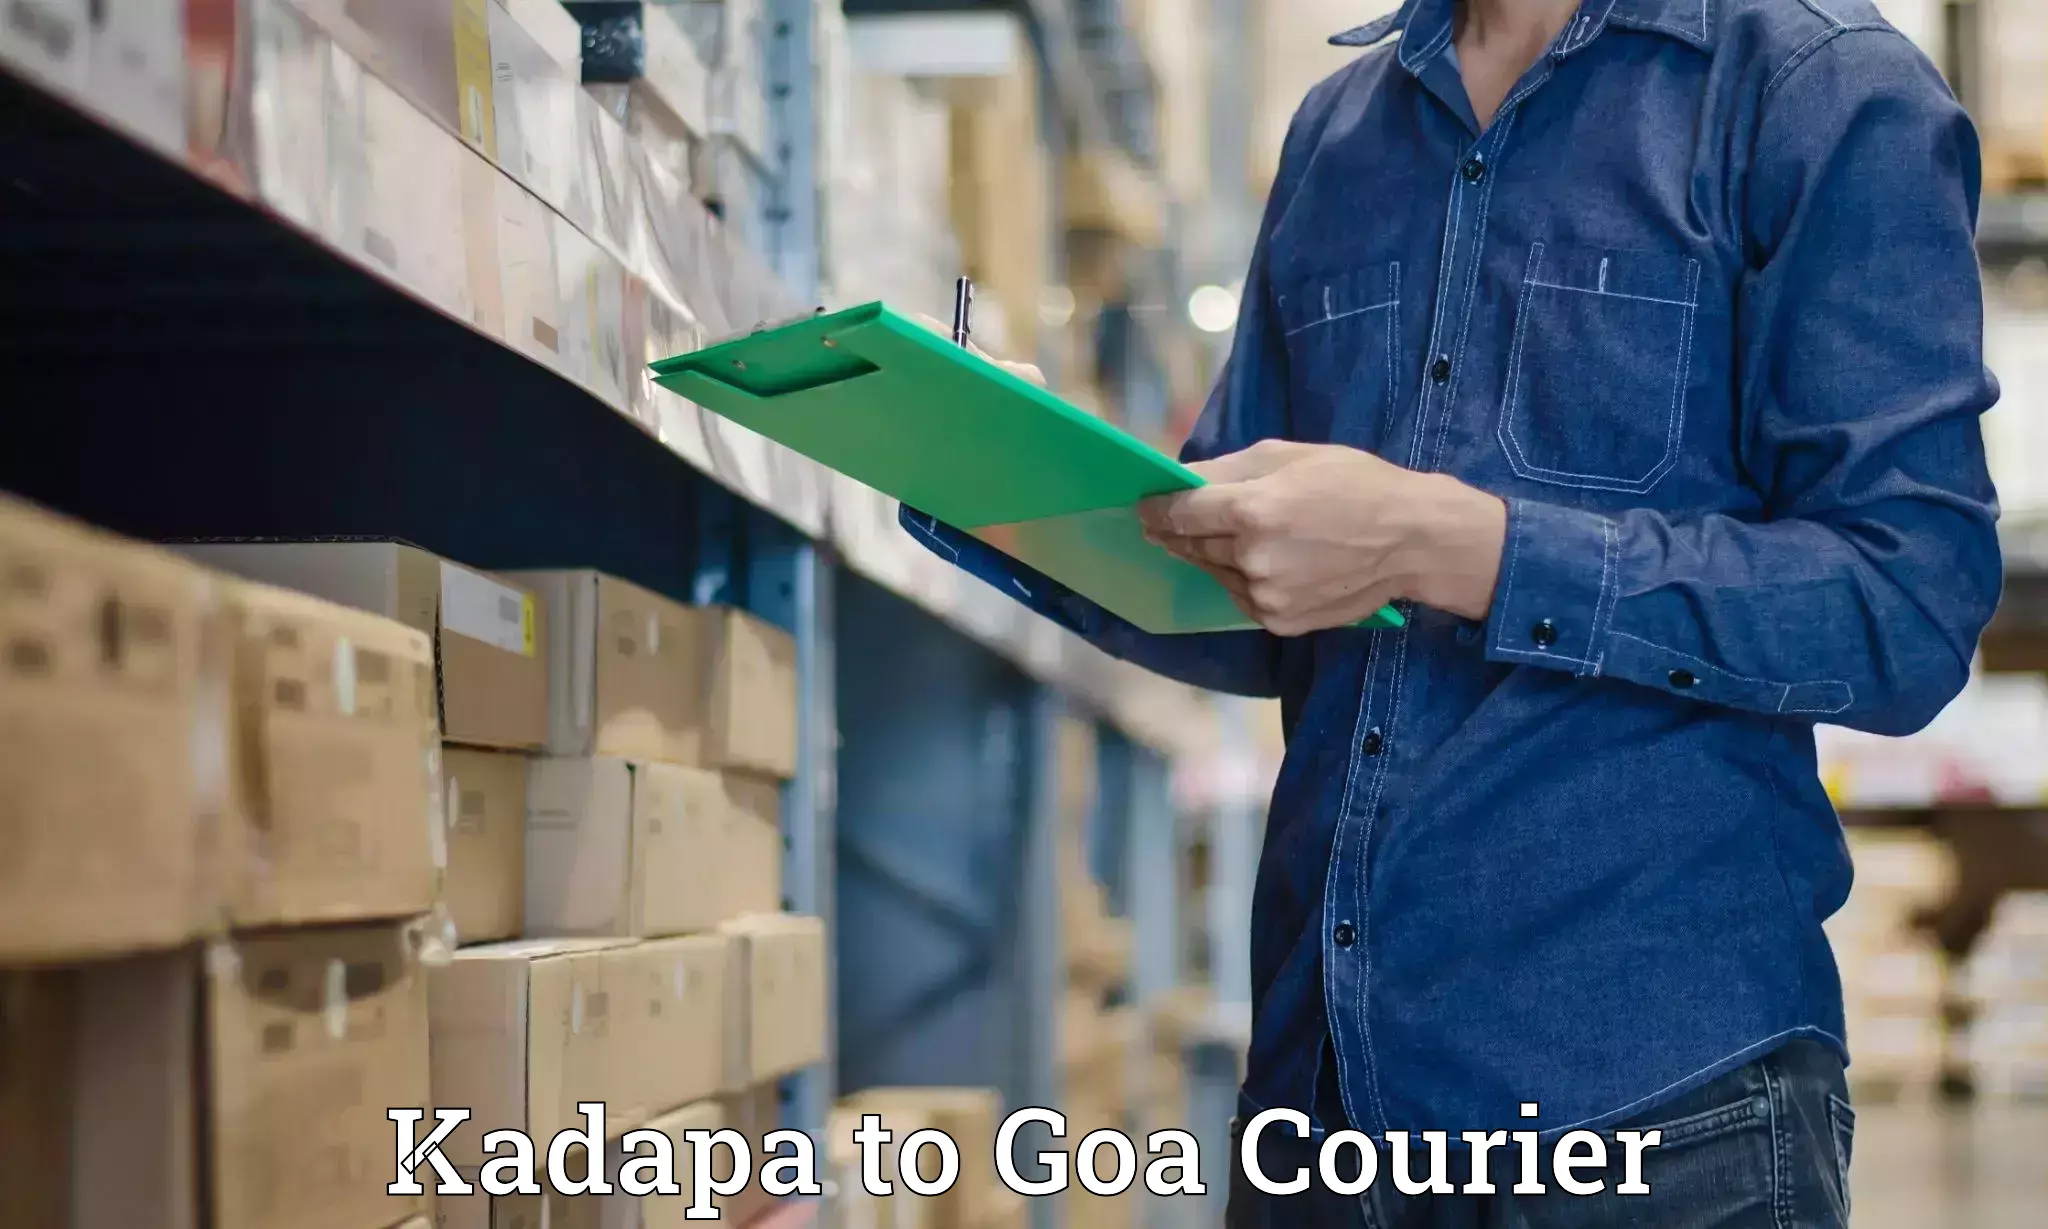 Easy access courier services in Kadapa to Goa